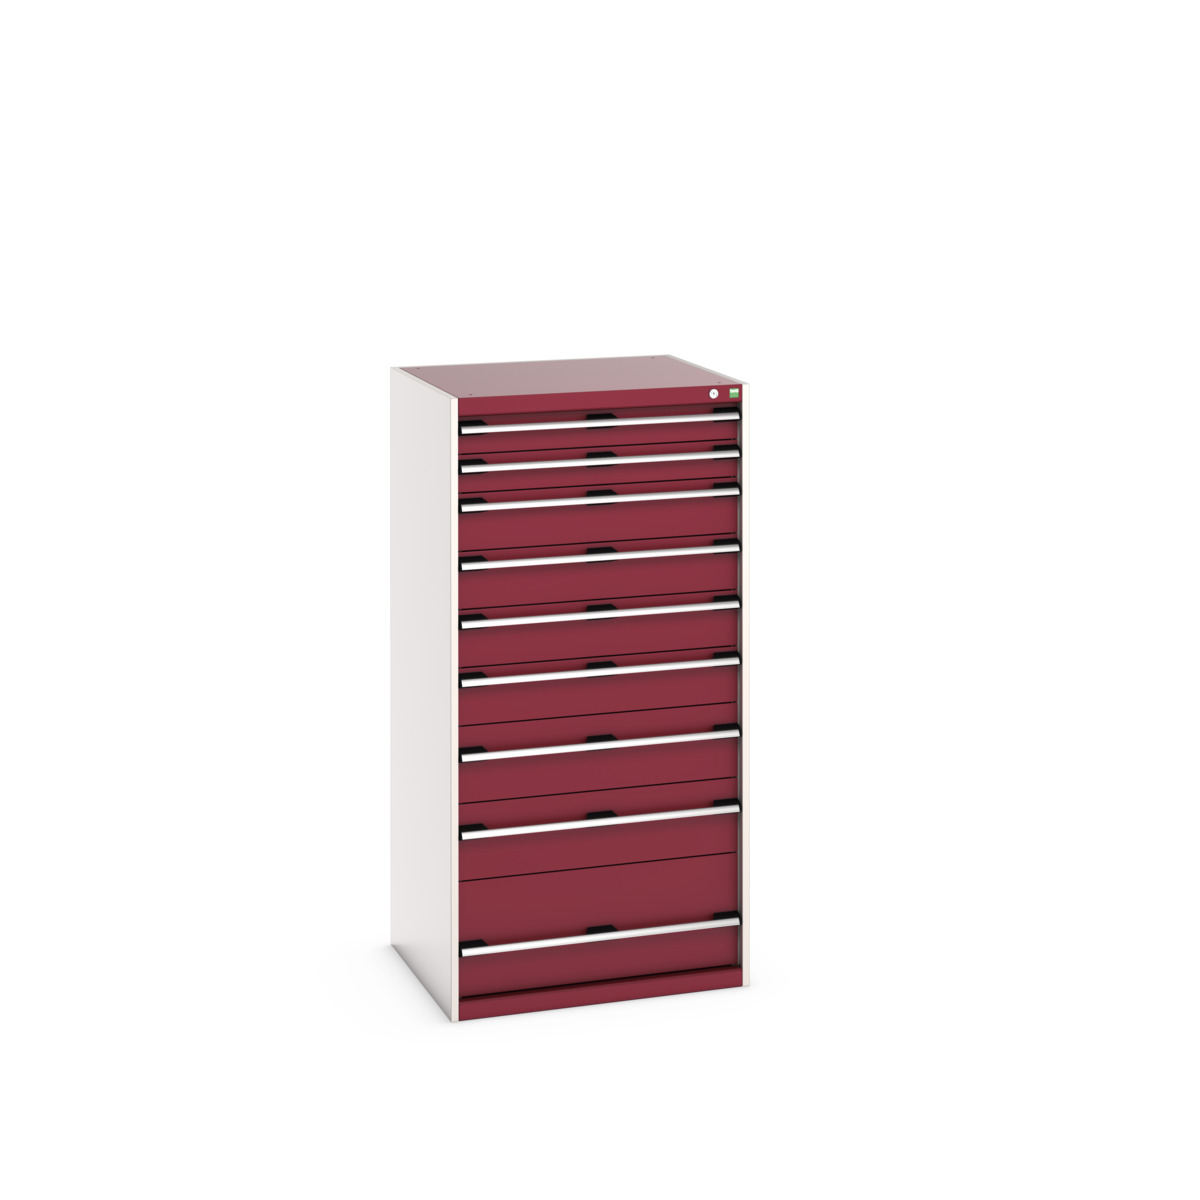 40028039.24V - cubio drawer cabinet